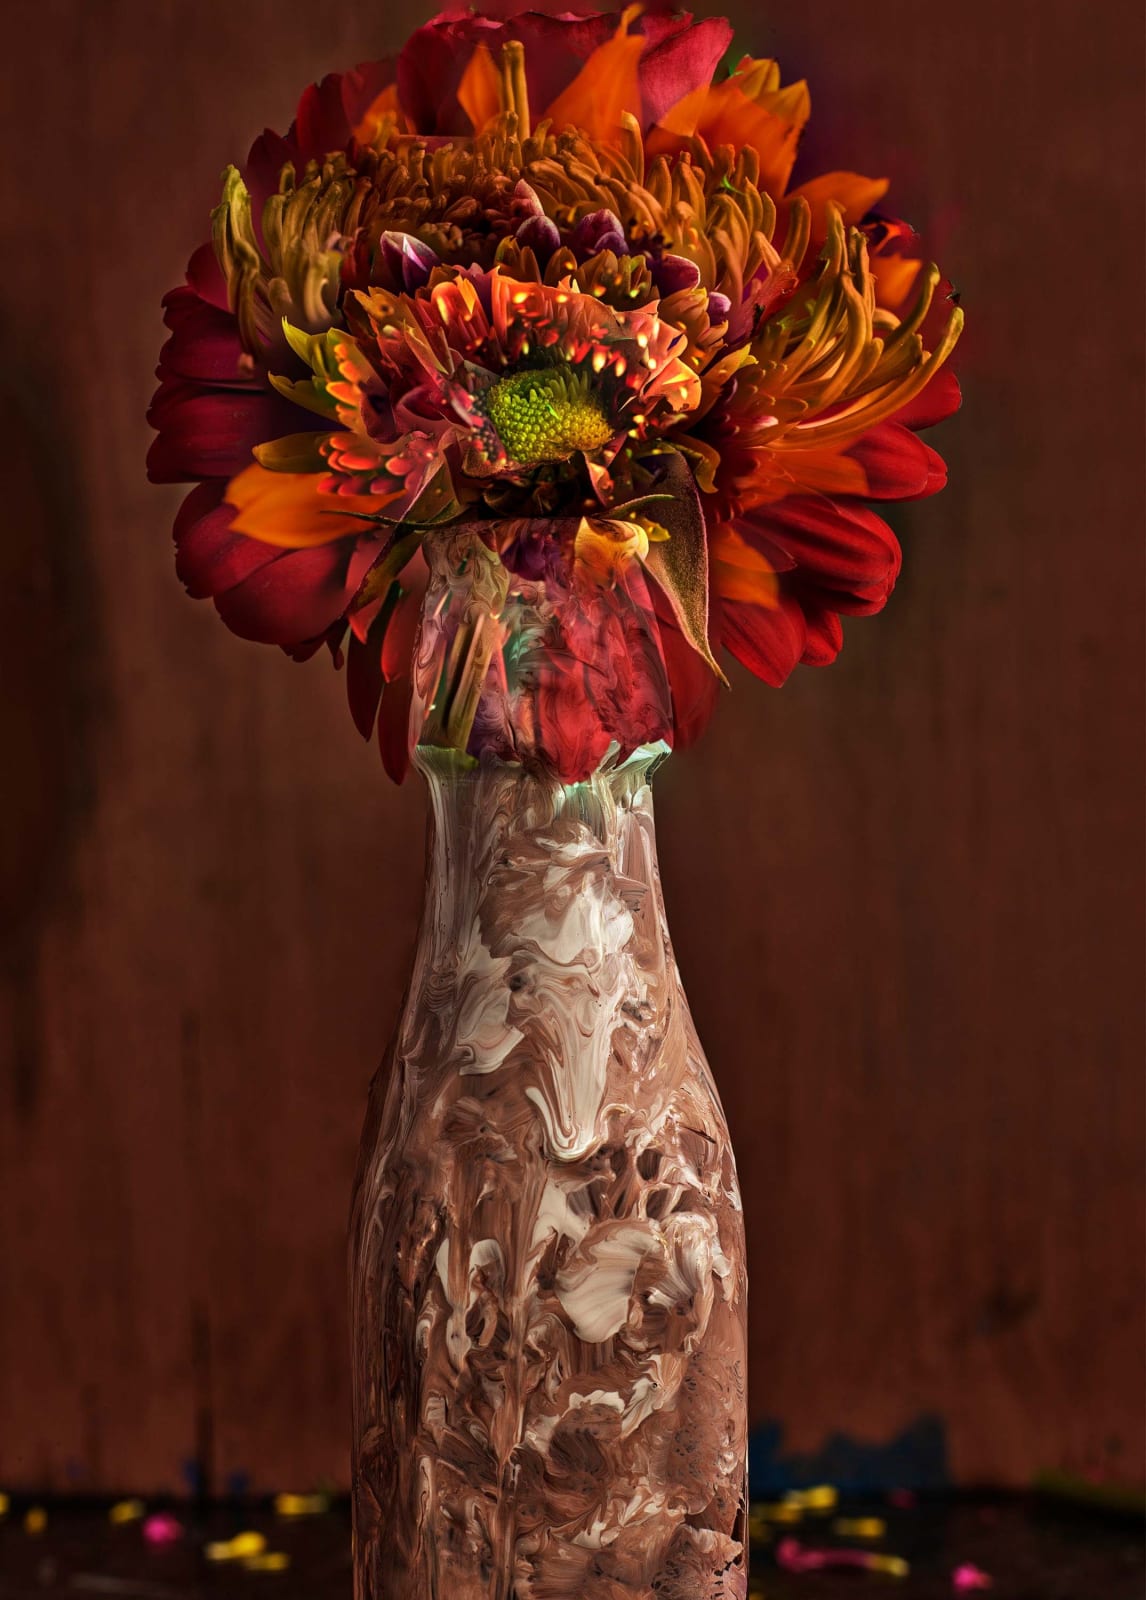 Abelardo Morell Flowers for Lisa #22 digitally composited image of orange flower in painted vase